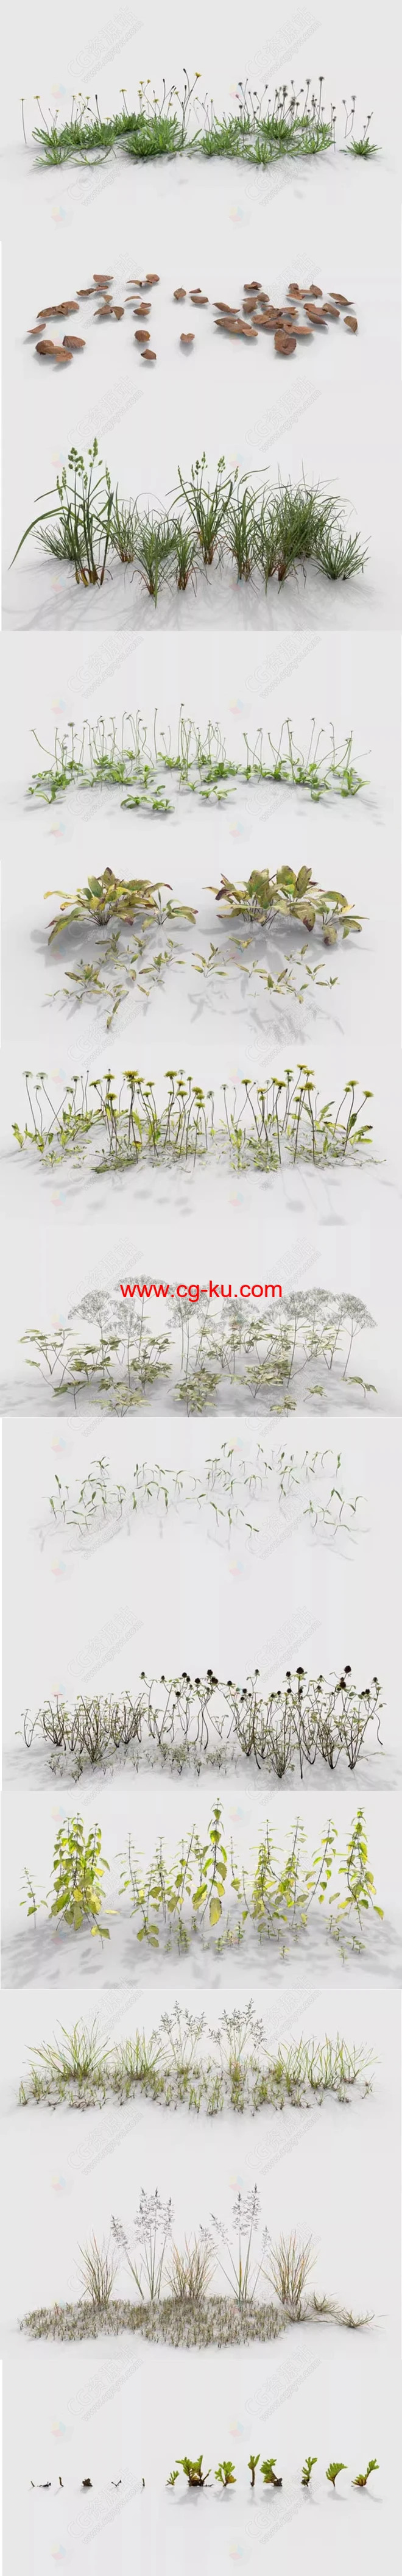 植物杂草树叶花草苔藓3D模型 C4D/Maya/Max/Blender/UE5格式的图片2